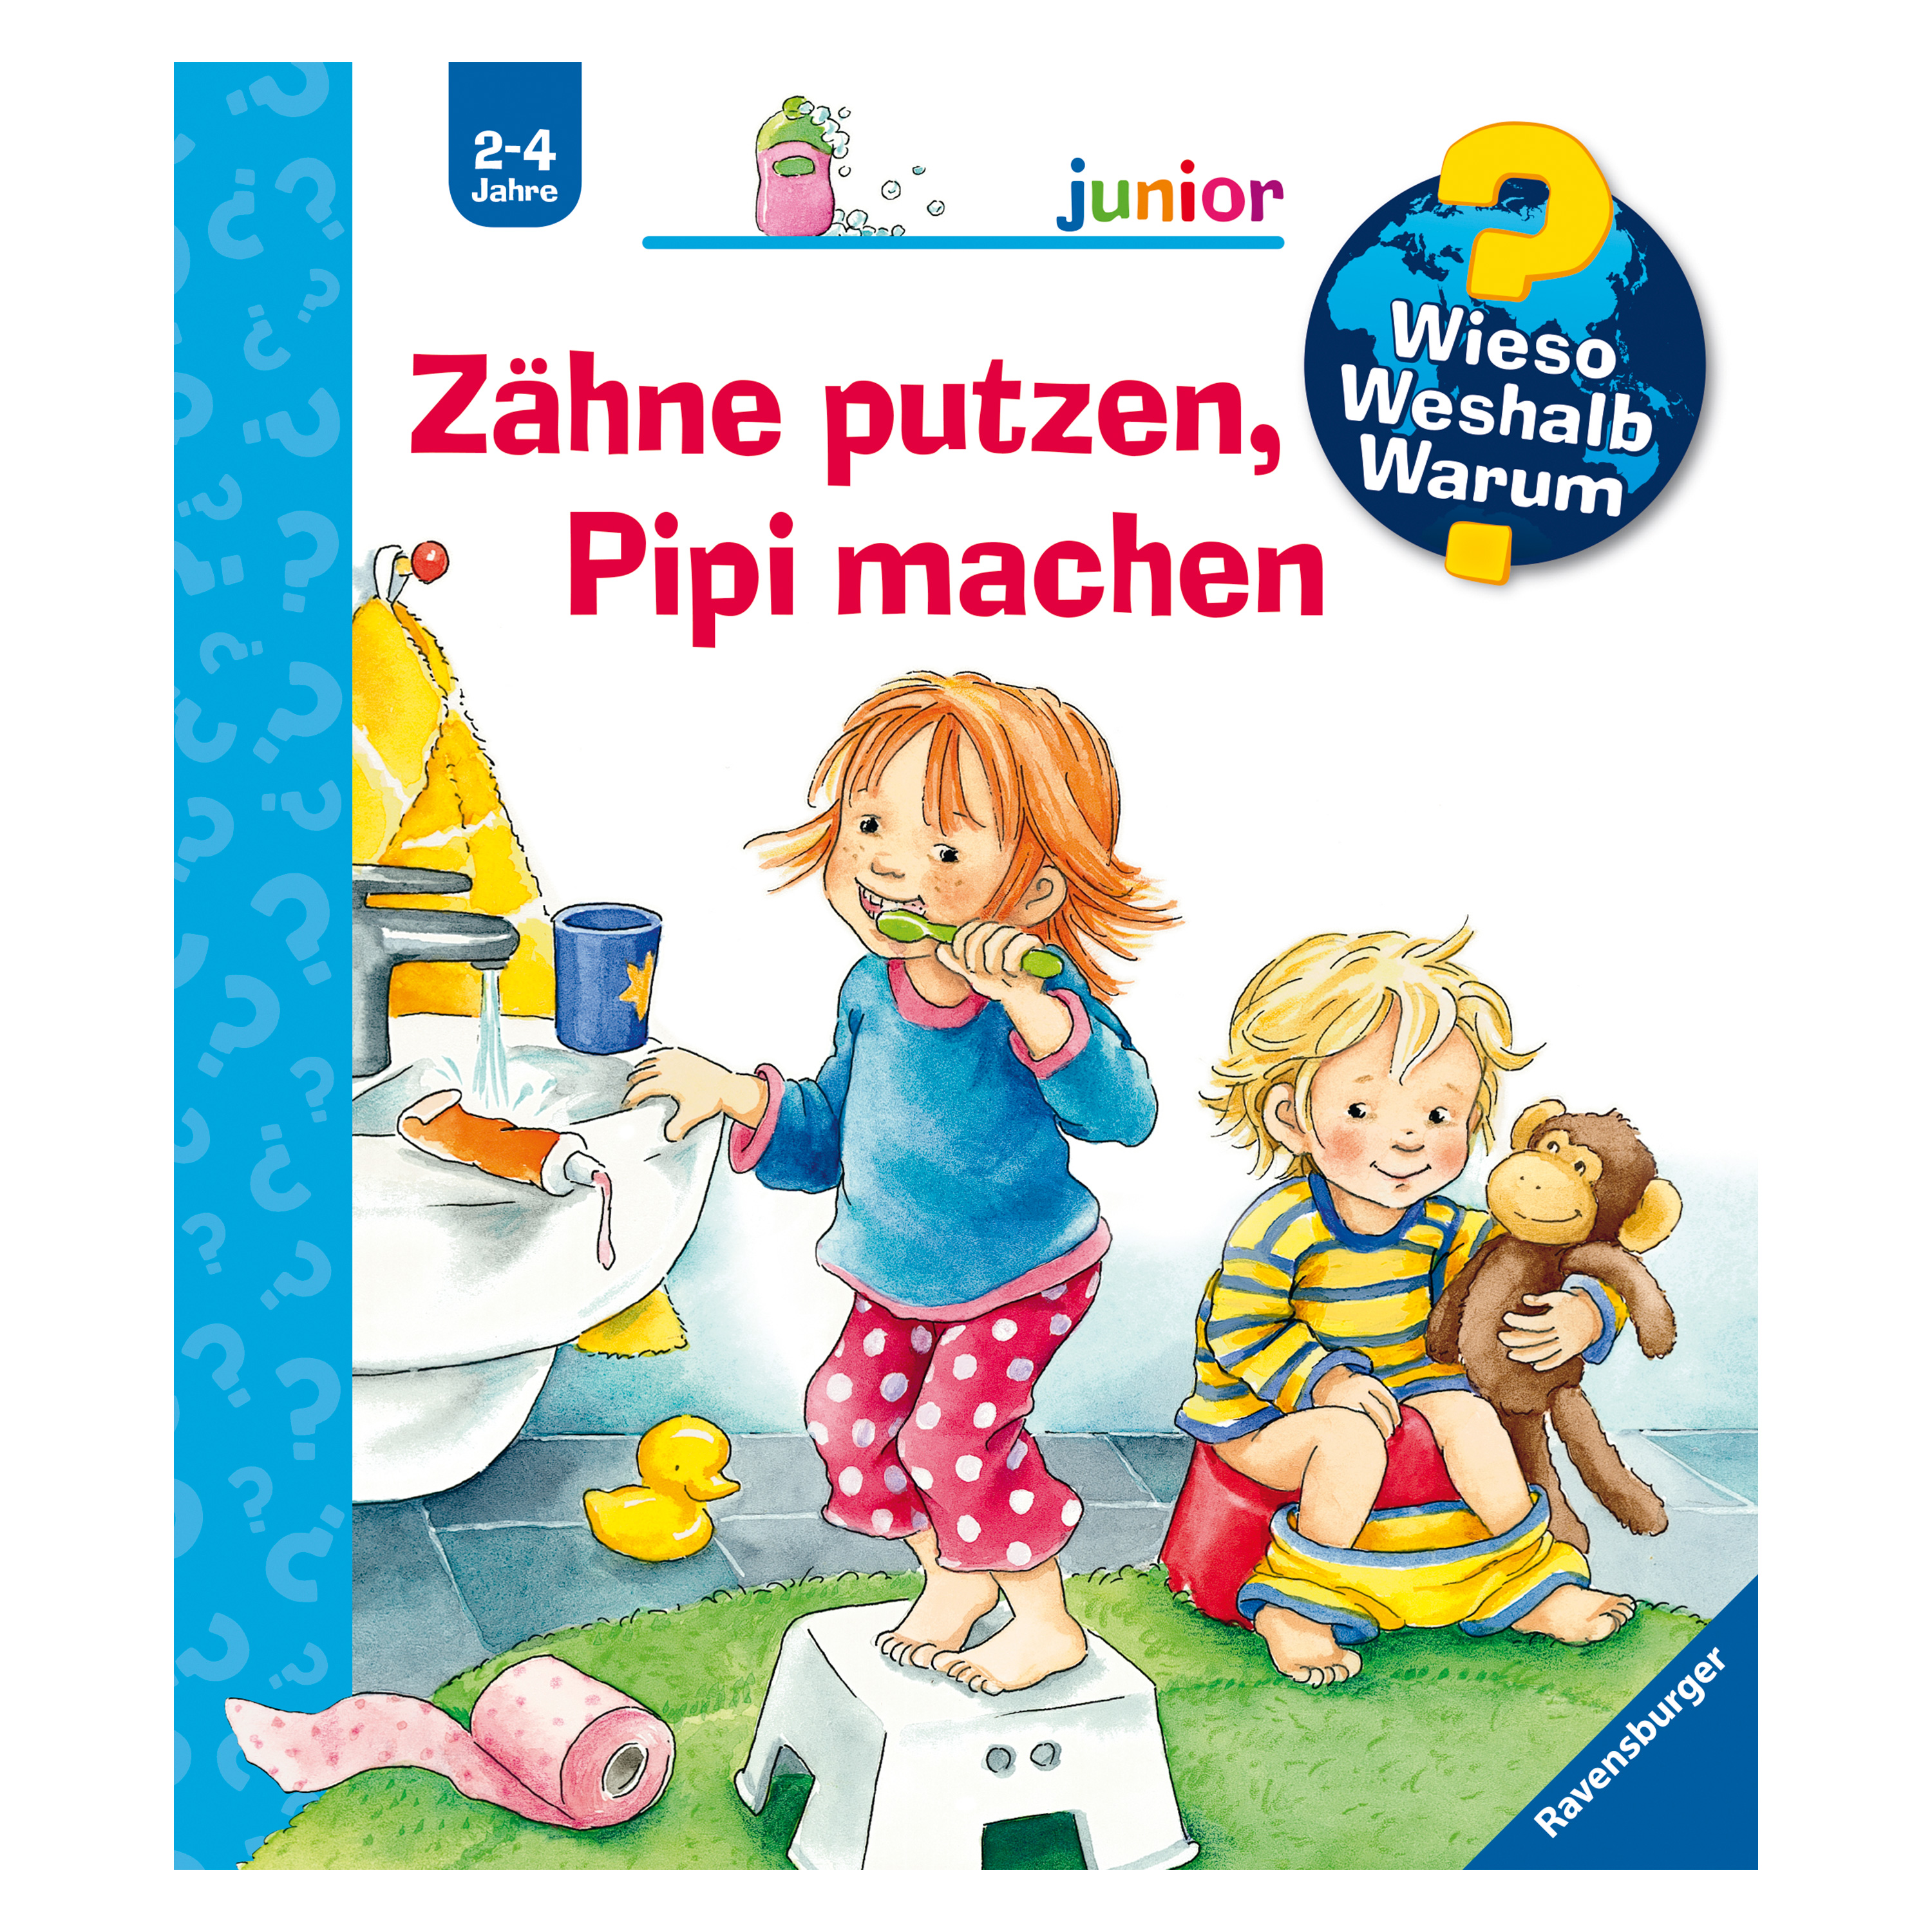 WWW Junior 'Zähne putzen, Pipi machen' (Bd. 52)